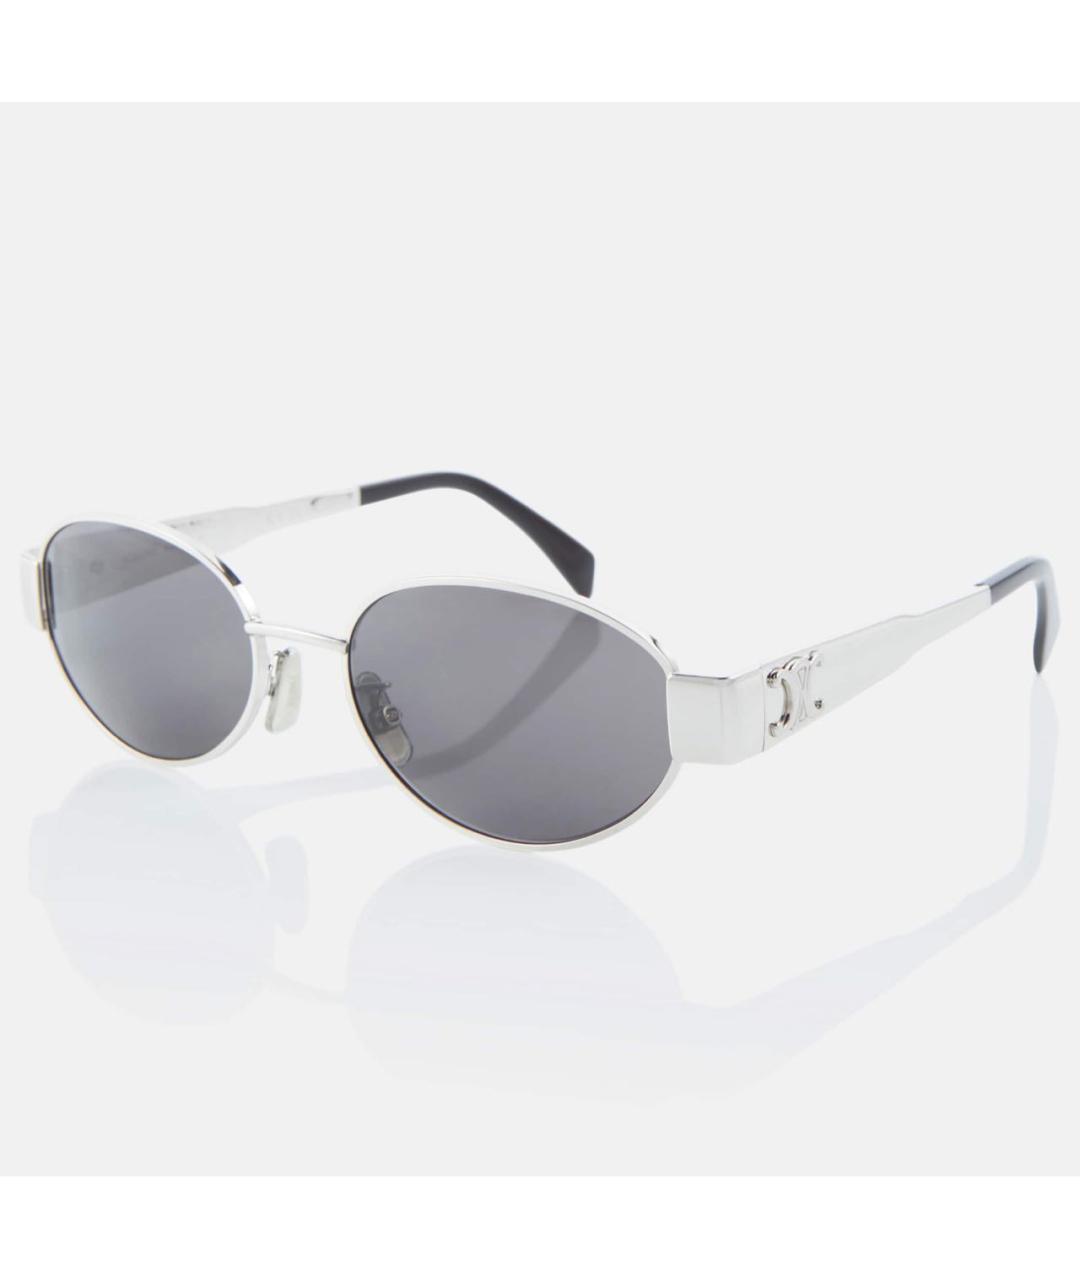 CELINE PRE-OWNED Серебряные металлические солнцезащитные очки, фото 2